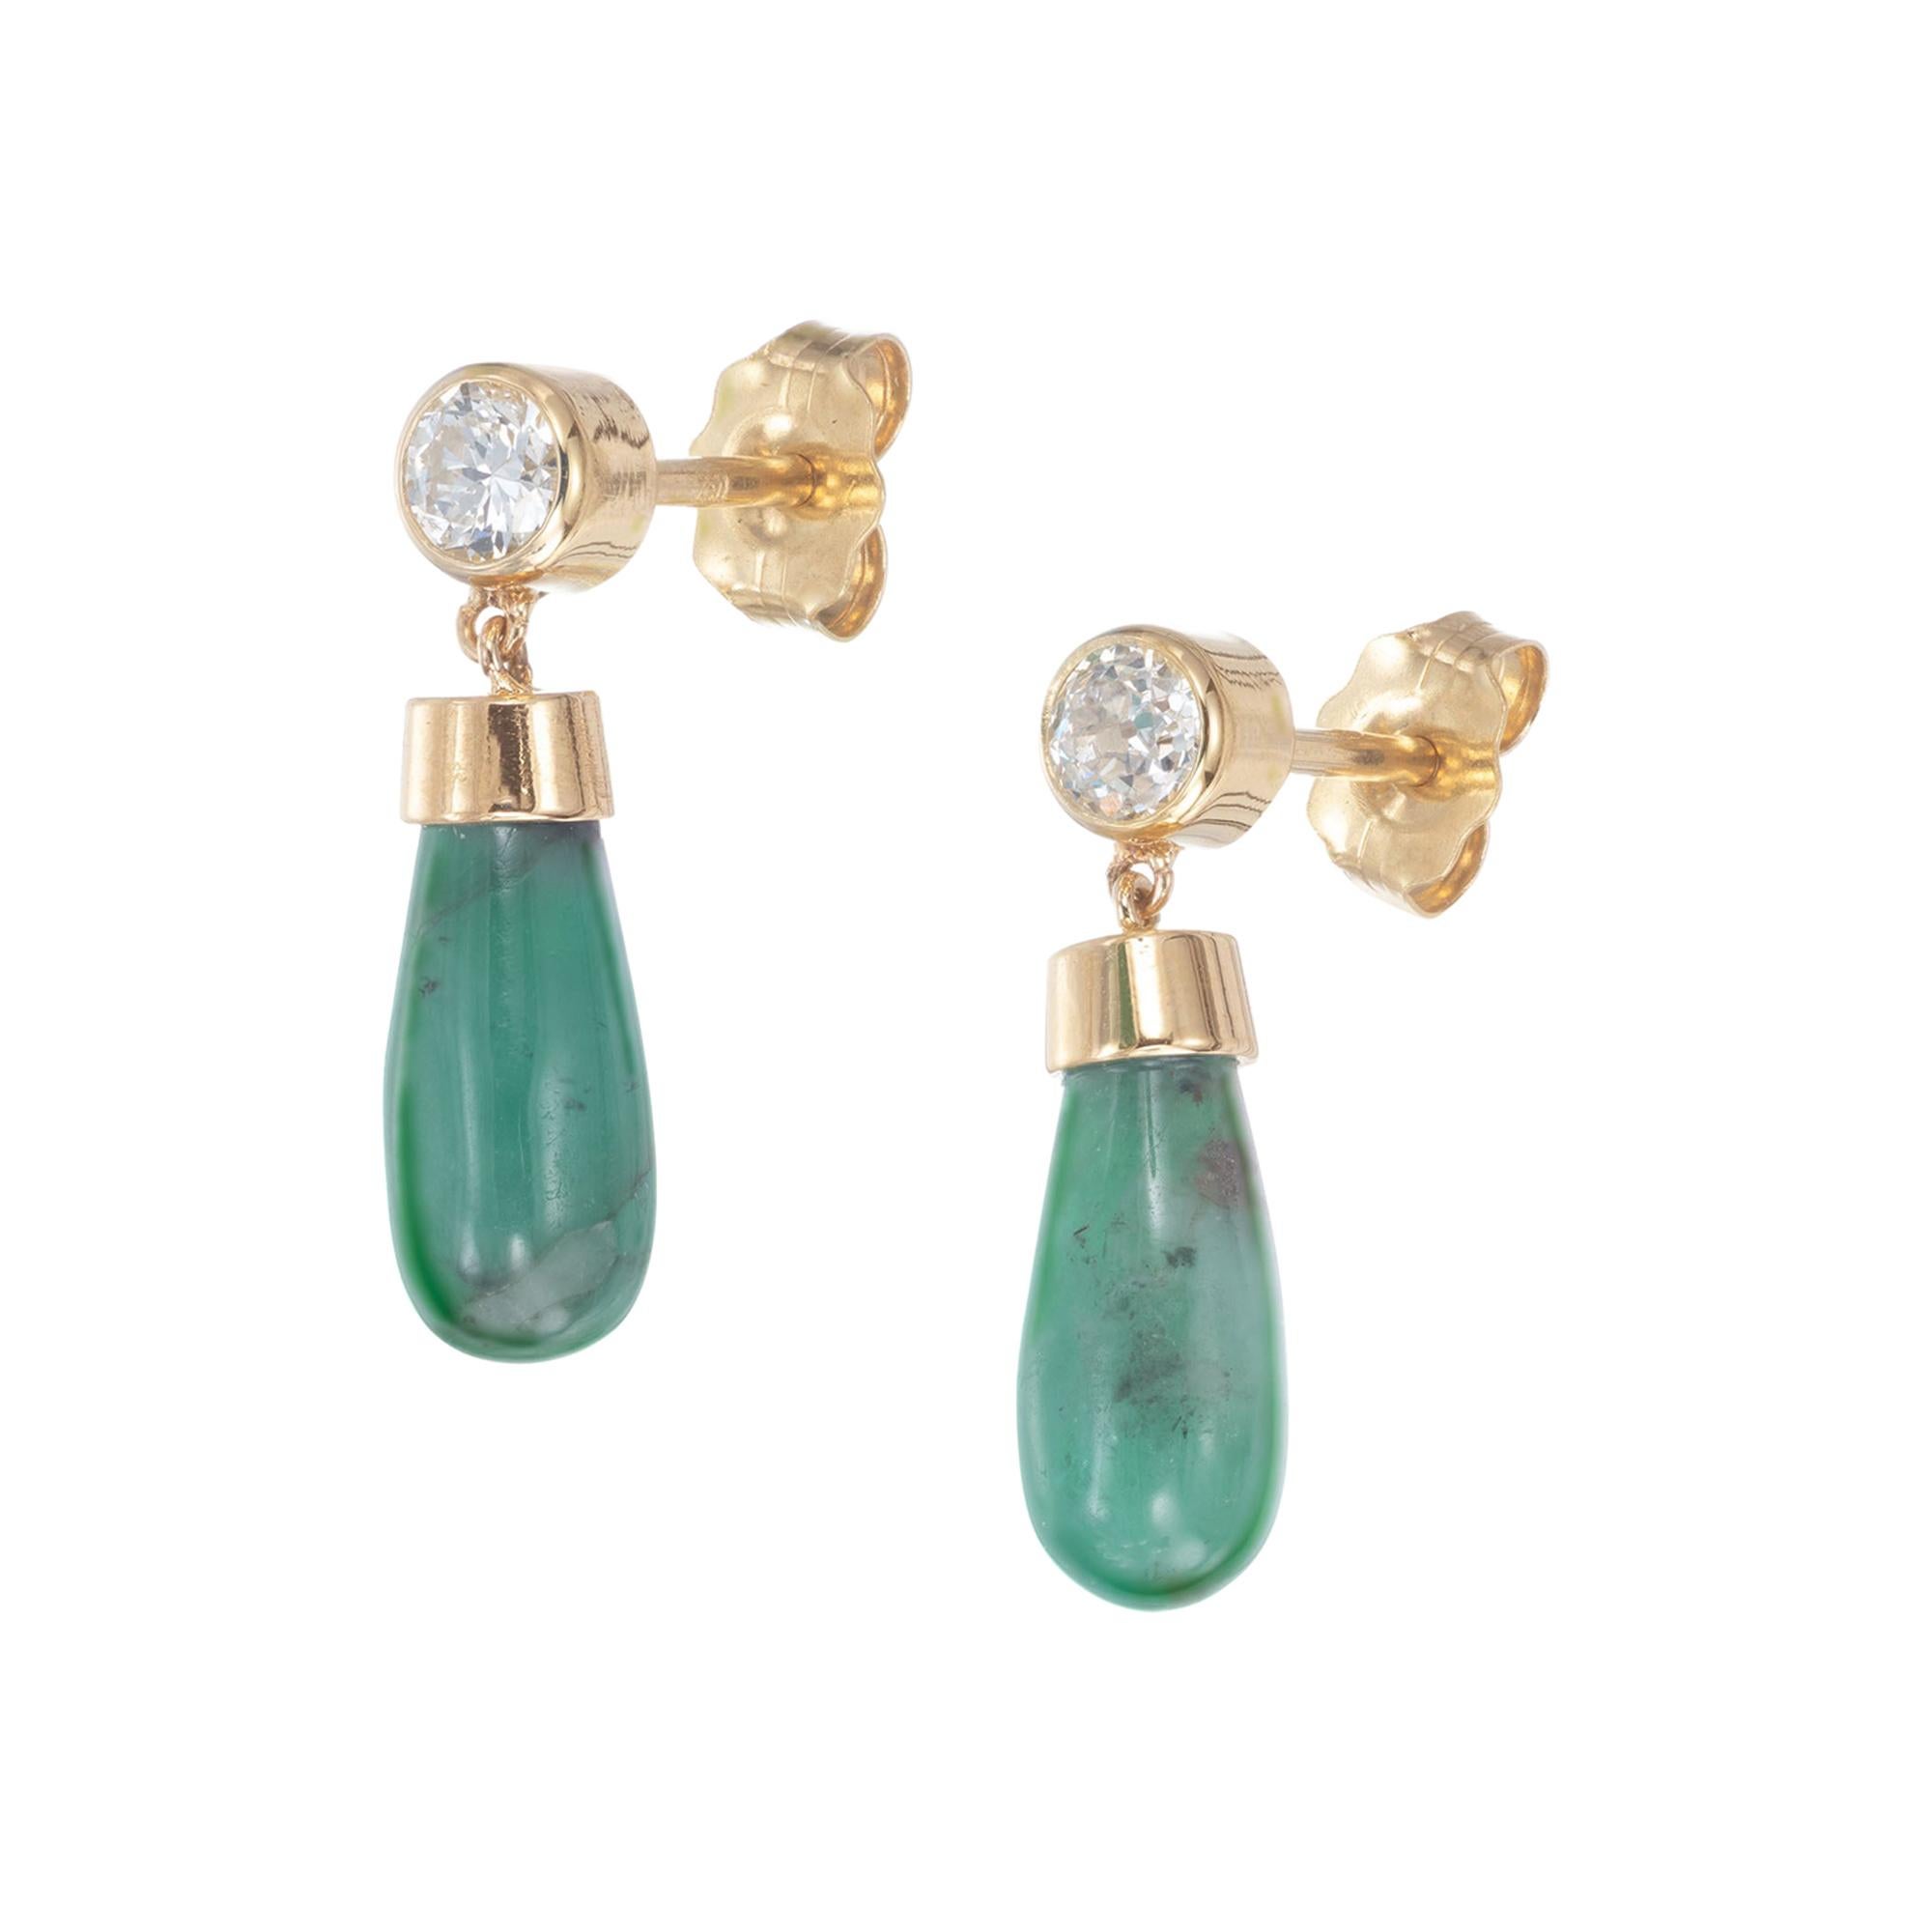 Peter Suchy GIA Certified 3.79 Carat Emerald Diamond Yellow Gold Dangle Earrings